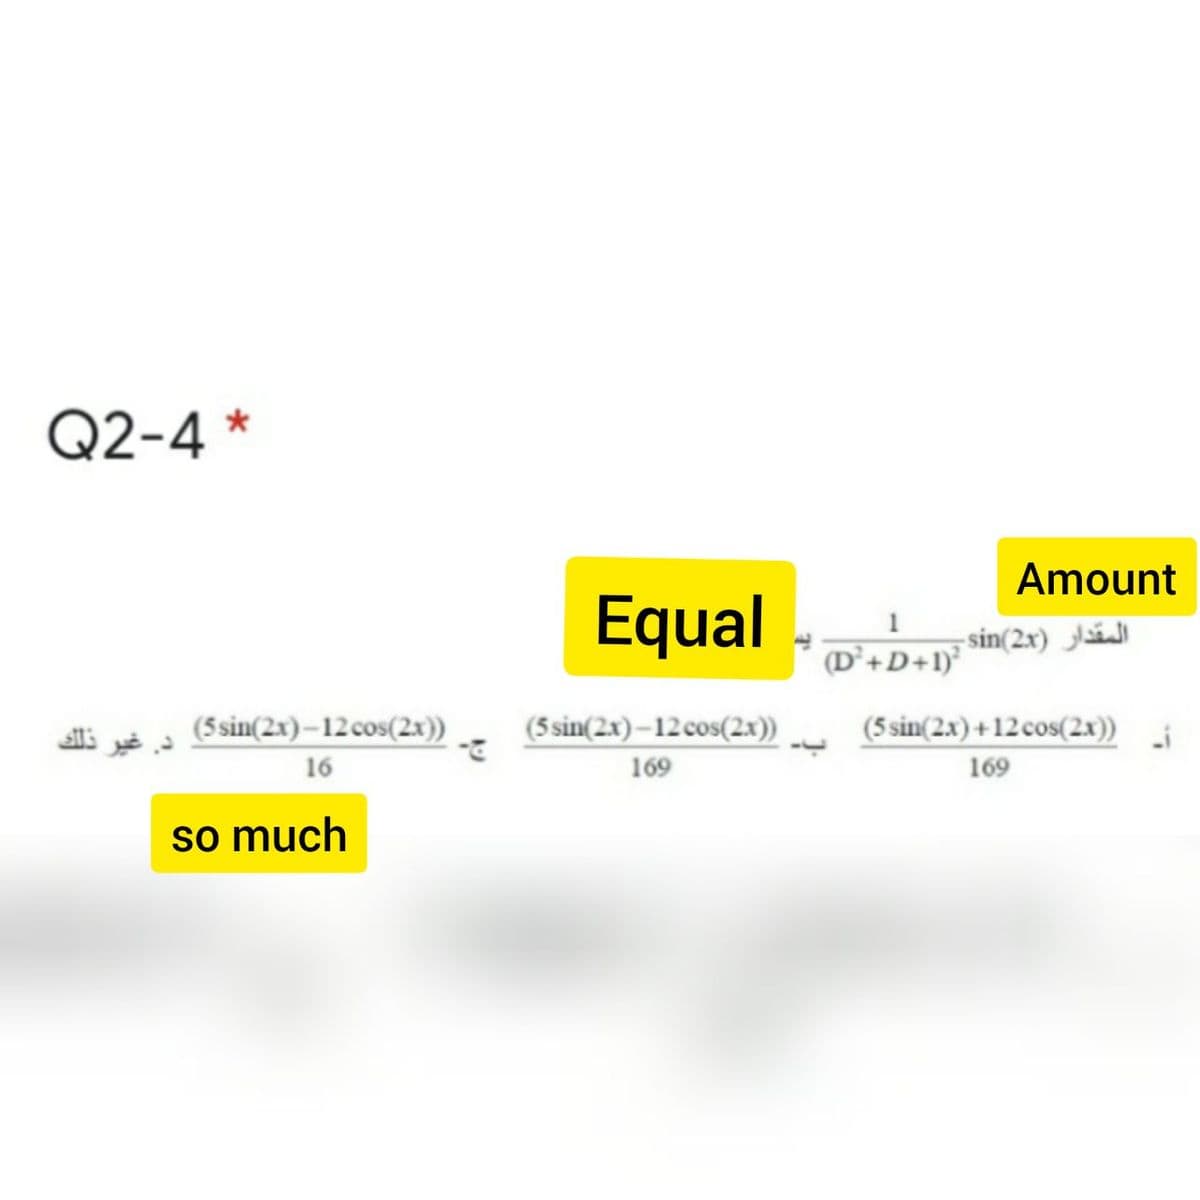 Q2-4 *
Amount
Equal
-sin(2x) á
(D’+D+1)°
(5sin(2x)–12cos(2x))
(5 sin(2x)–12 cos(2x))
(5 sin(2x) +12cos(2x))
16
169
169
so much
